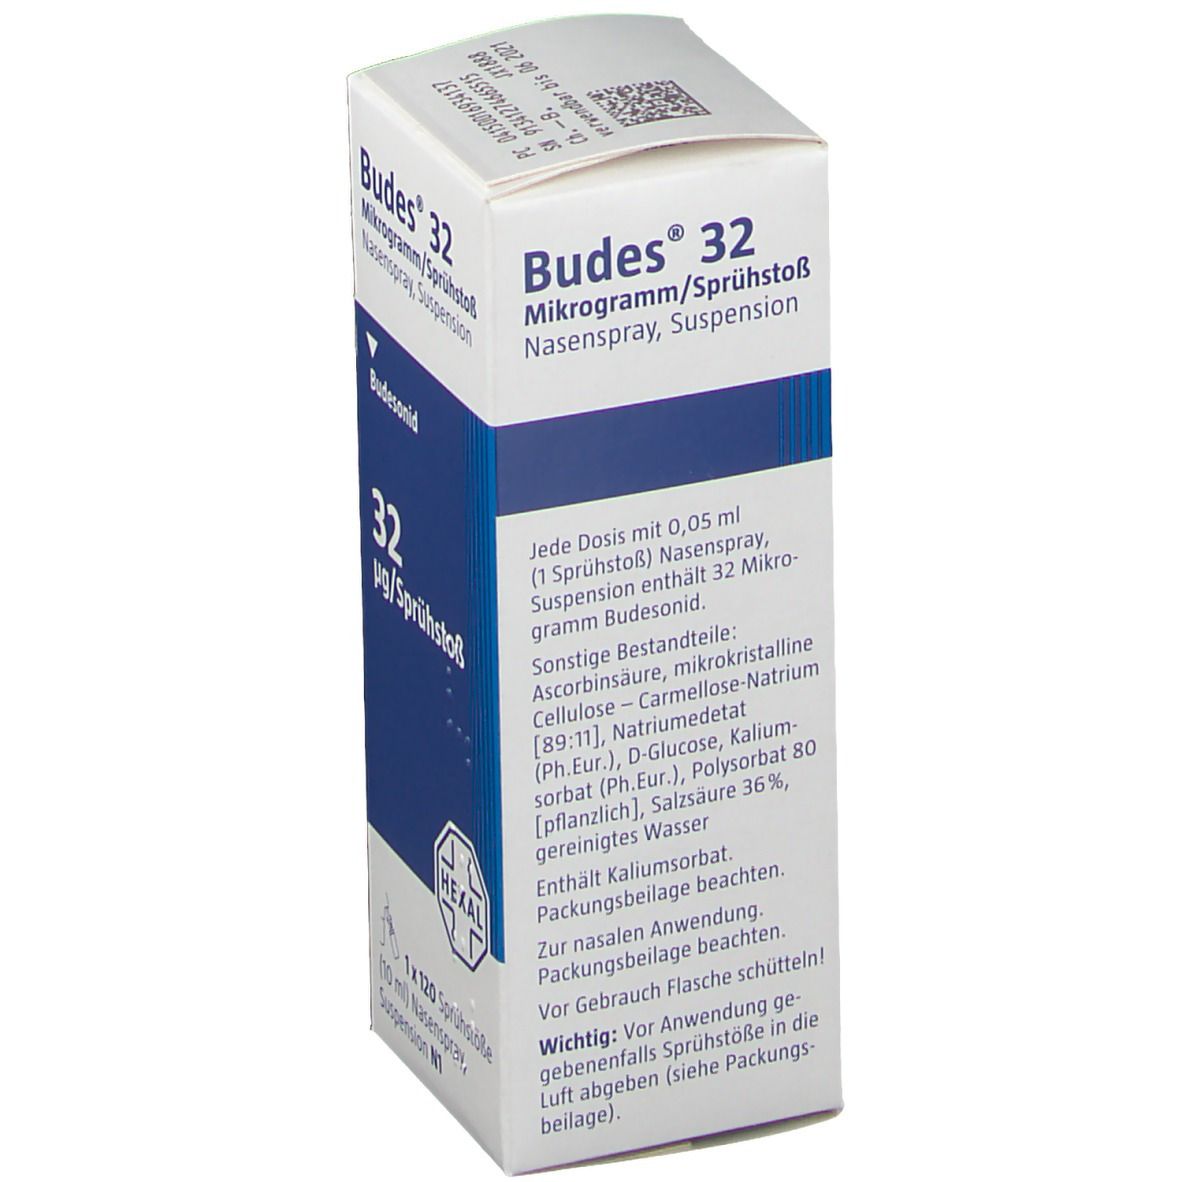 Budes® Nasenspray 32 µg/Sprühstoß